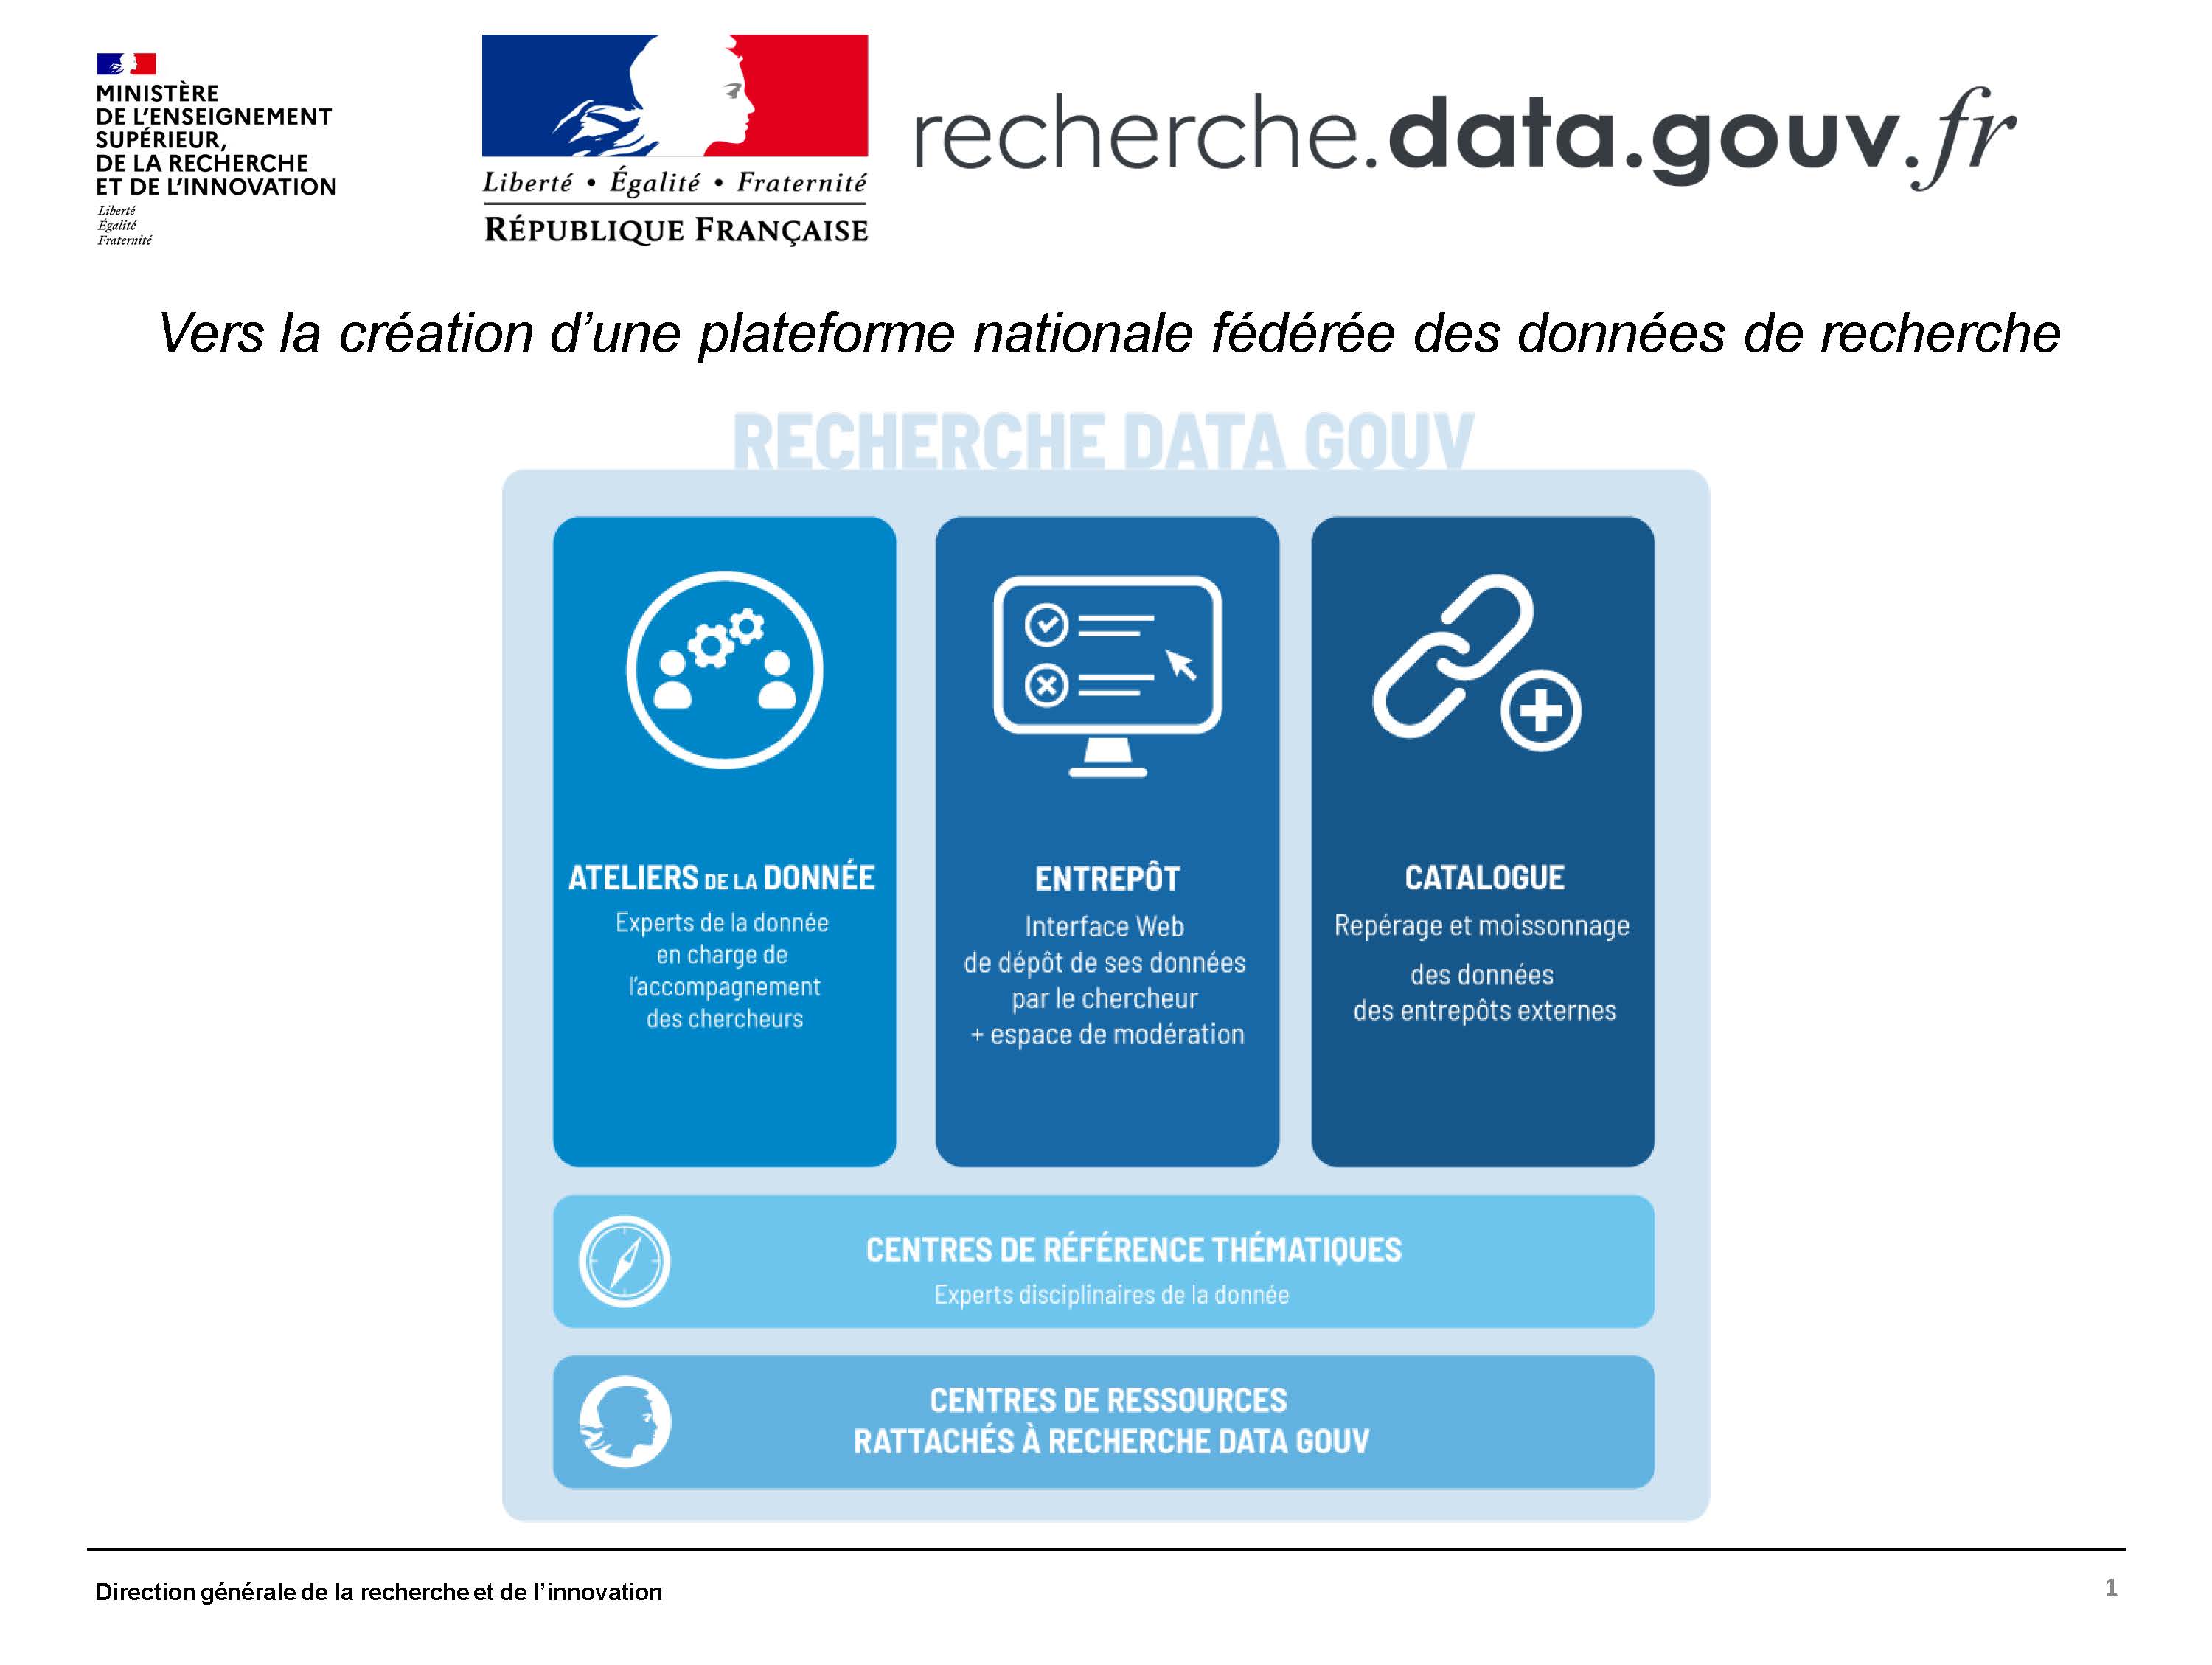 [RDA France] Recherche Data Gouv - La plateforme nationale fédérée des données de la recherche